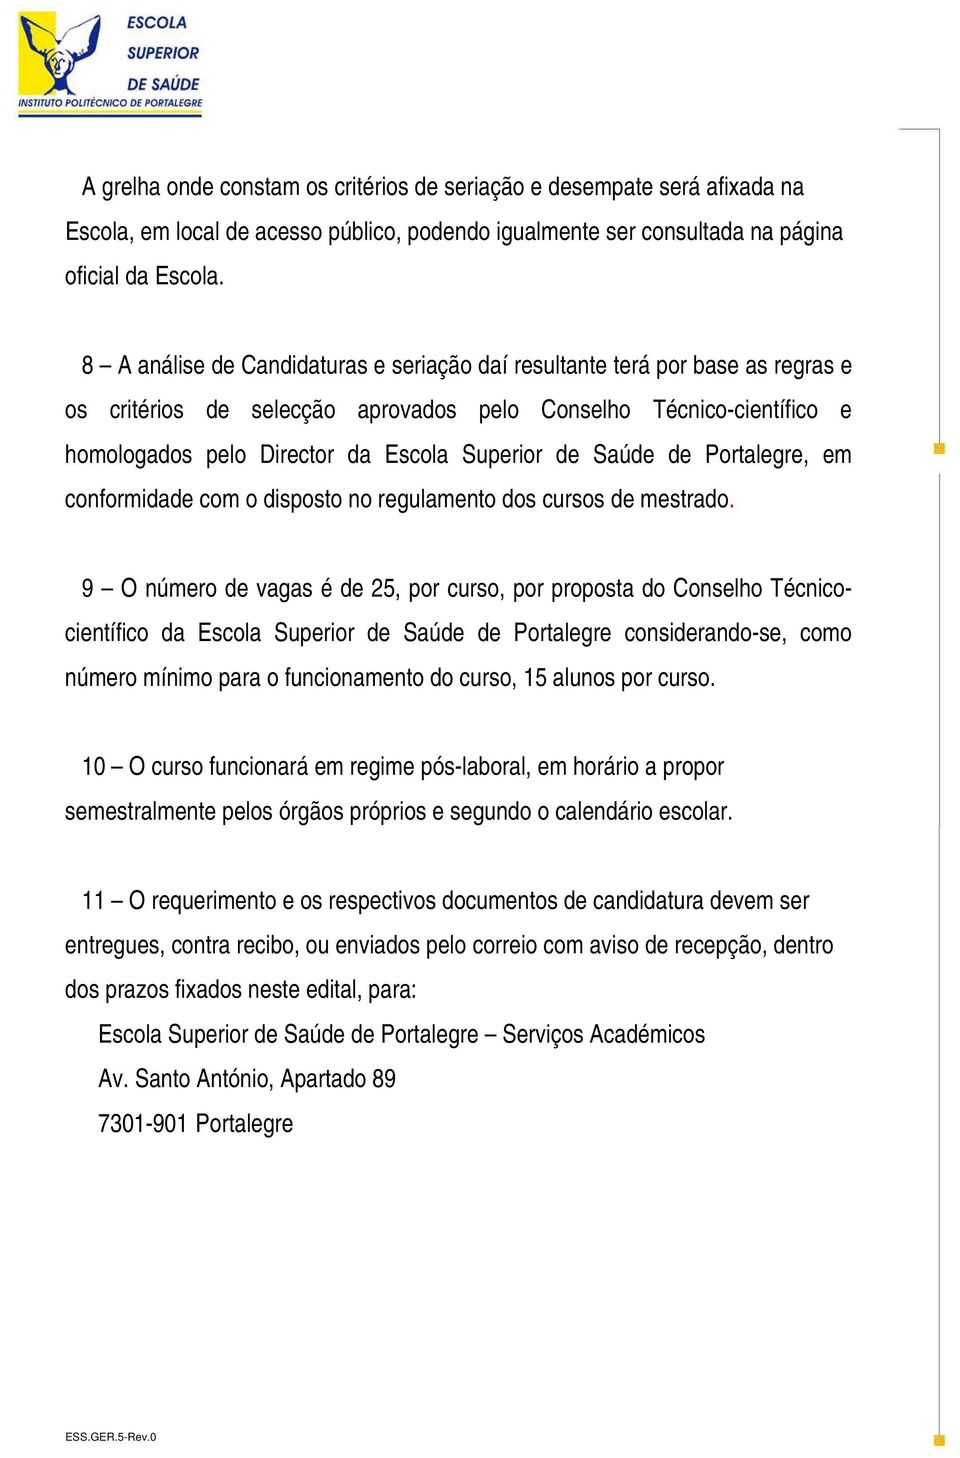 Saúde de Portalegre, em conformidade com o disposto no regulamento dos cursos de mestrado.